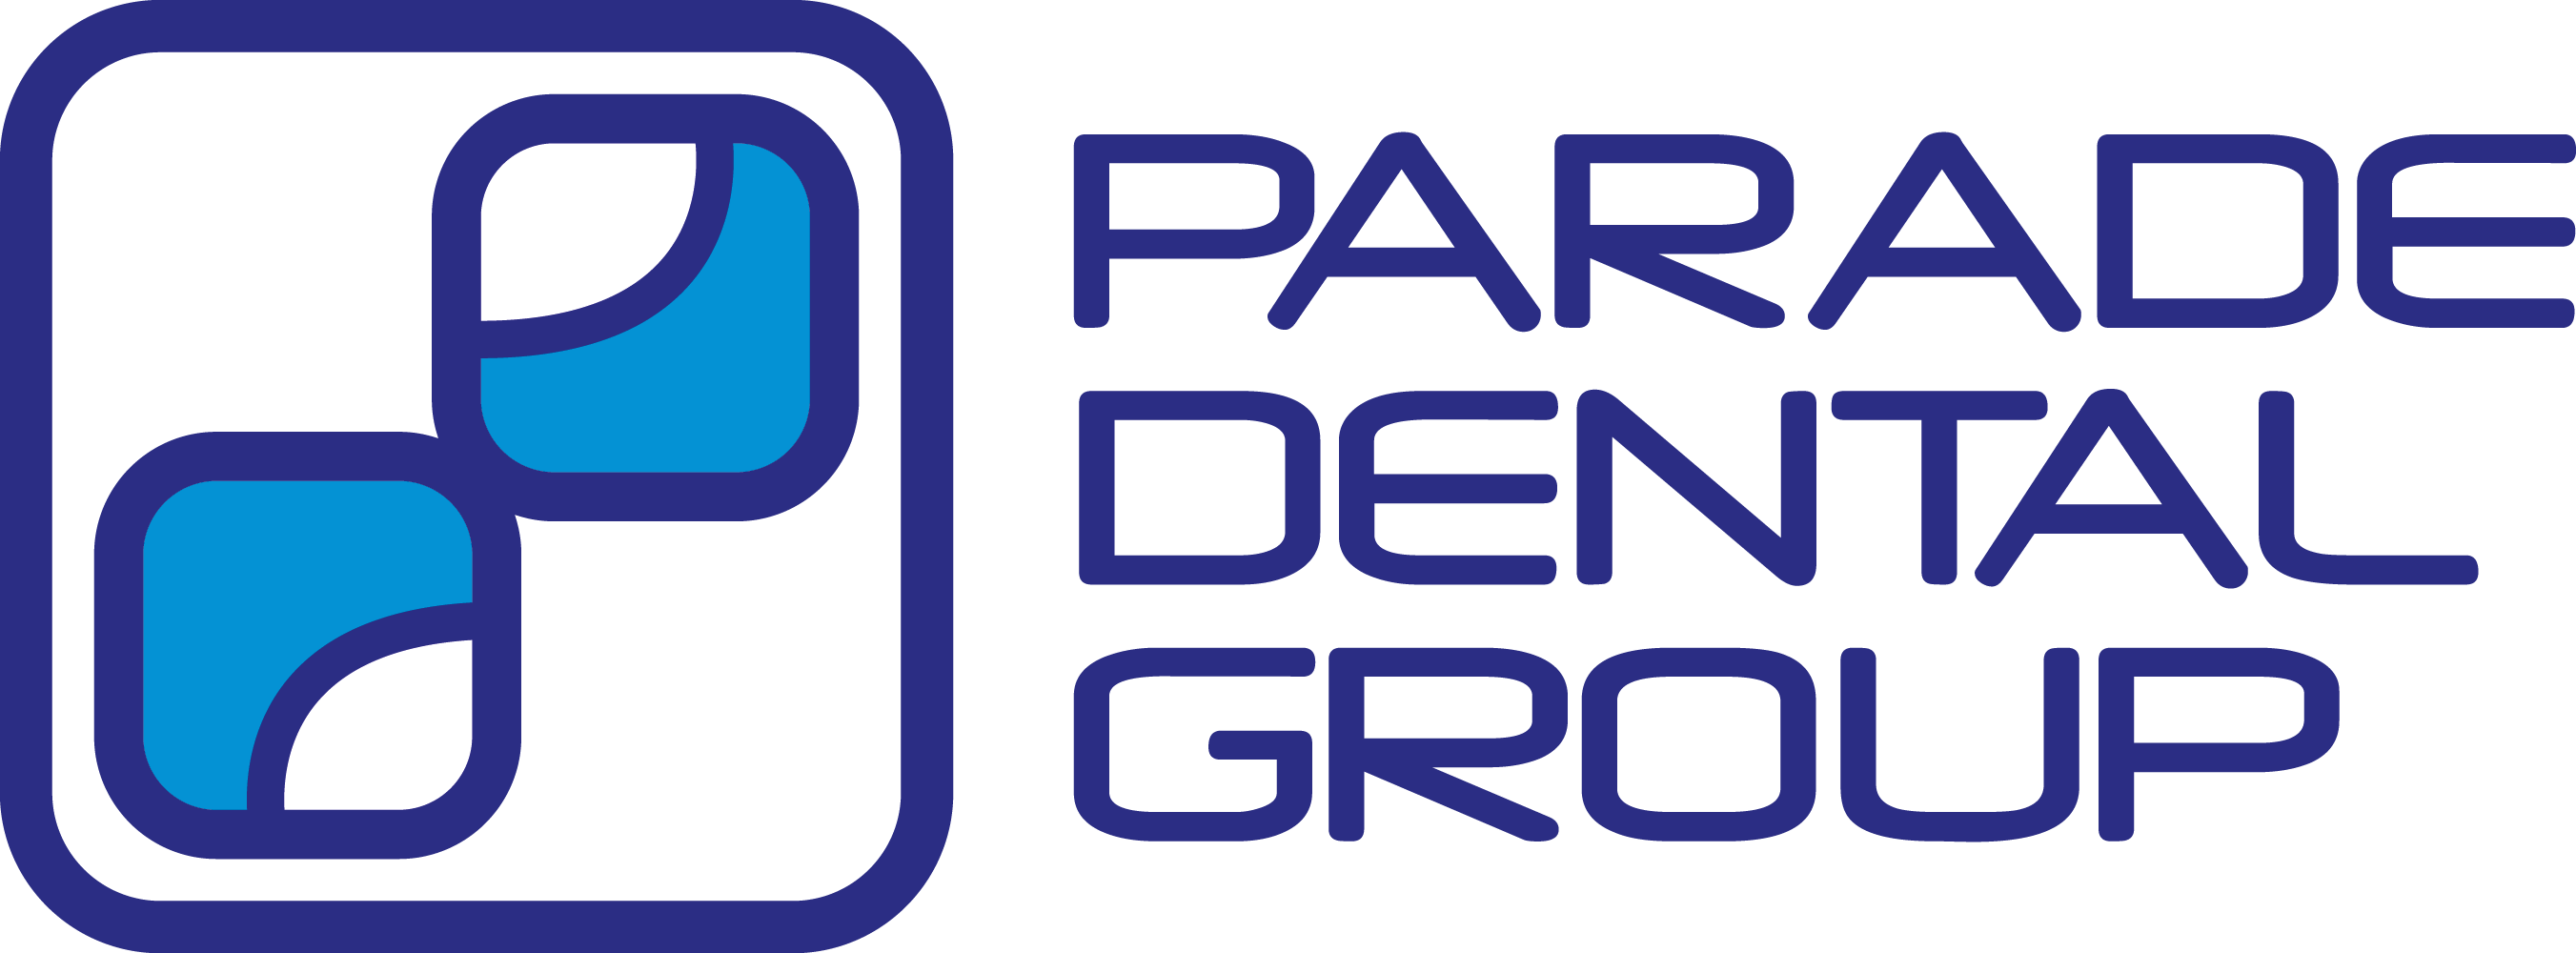 Parade Dental Group, Jersey